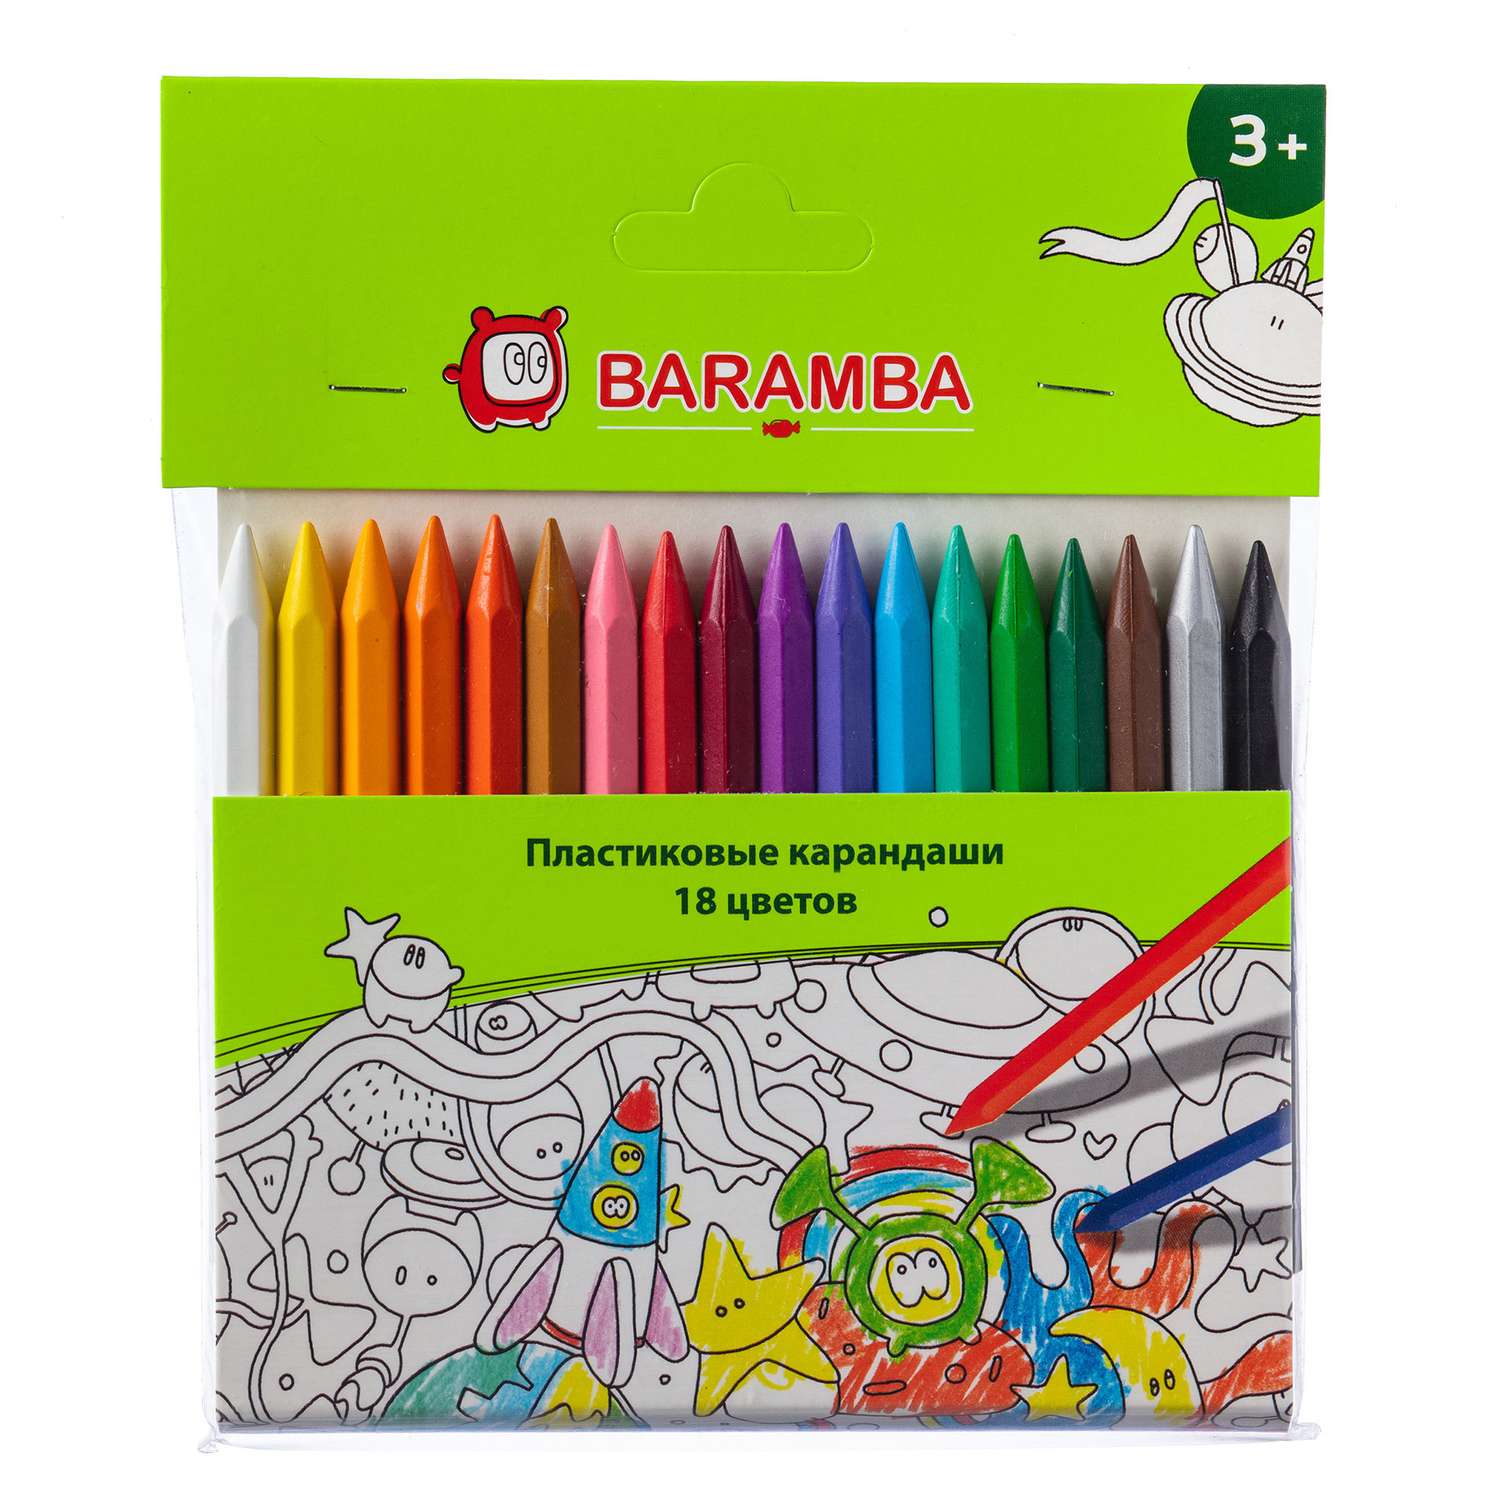 Карандаши Baramba пластиковые 18 шт + раскраска - фото 1